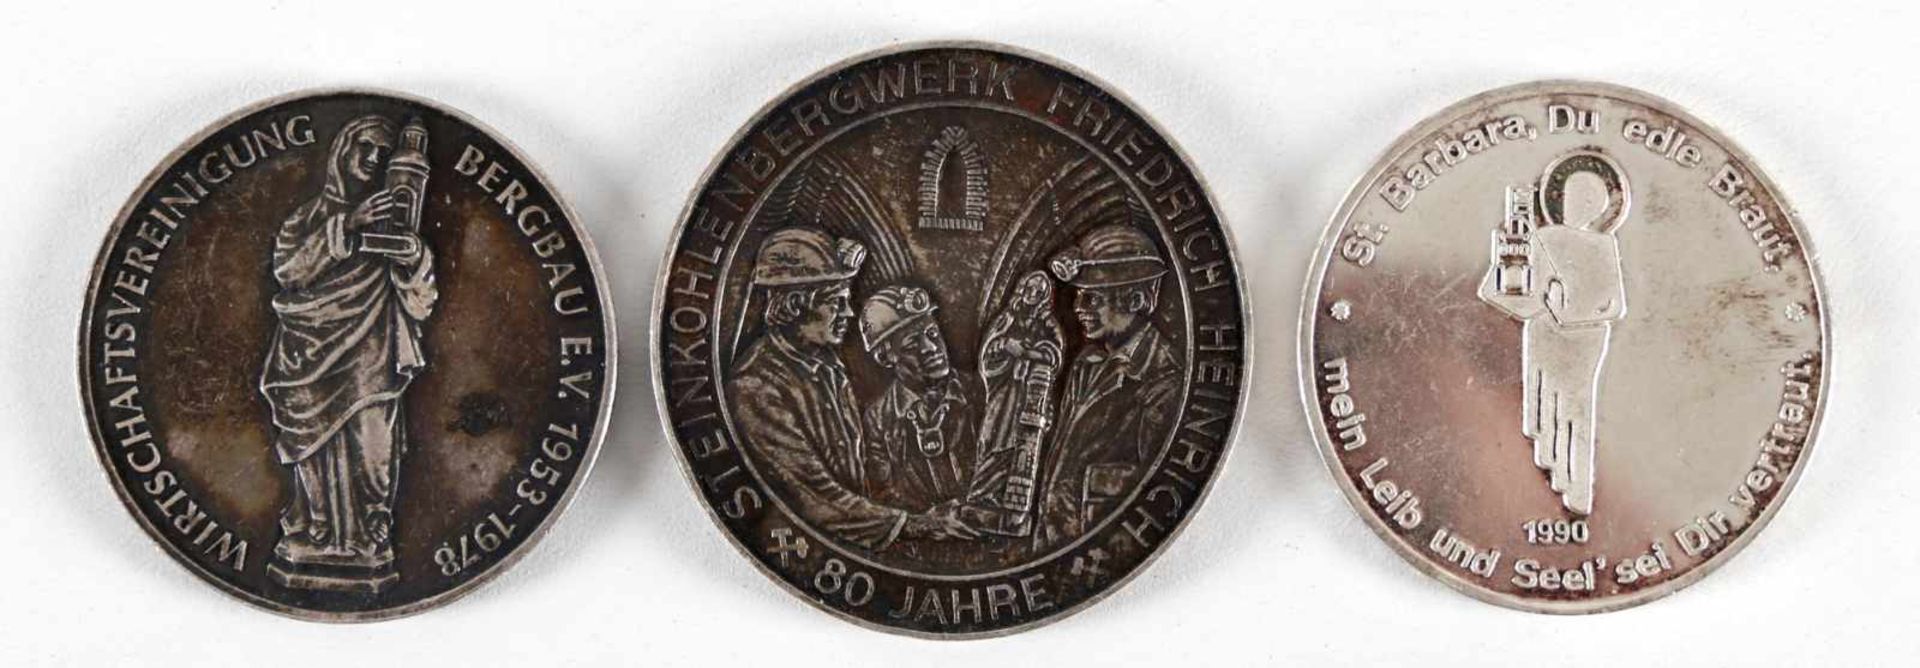 Drei Silber-Medaillen Hl. Barbara, 20. Jh.- Wirtschaftsvereinigung Bergbau E.V. 1953-1978,